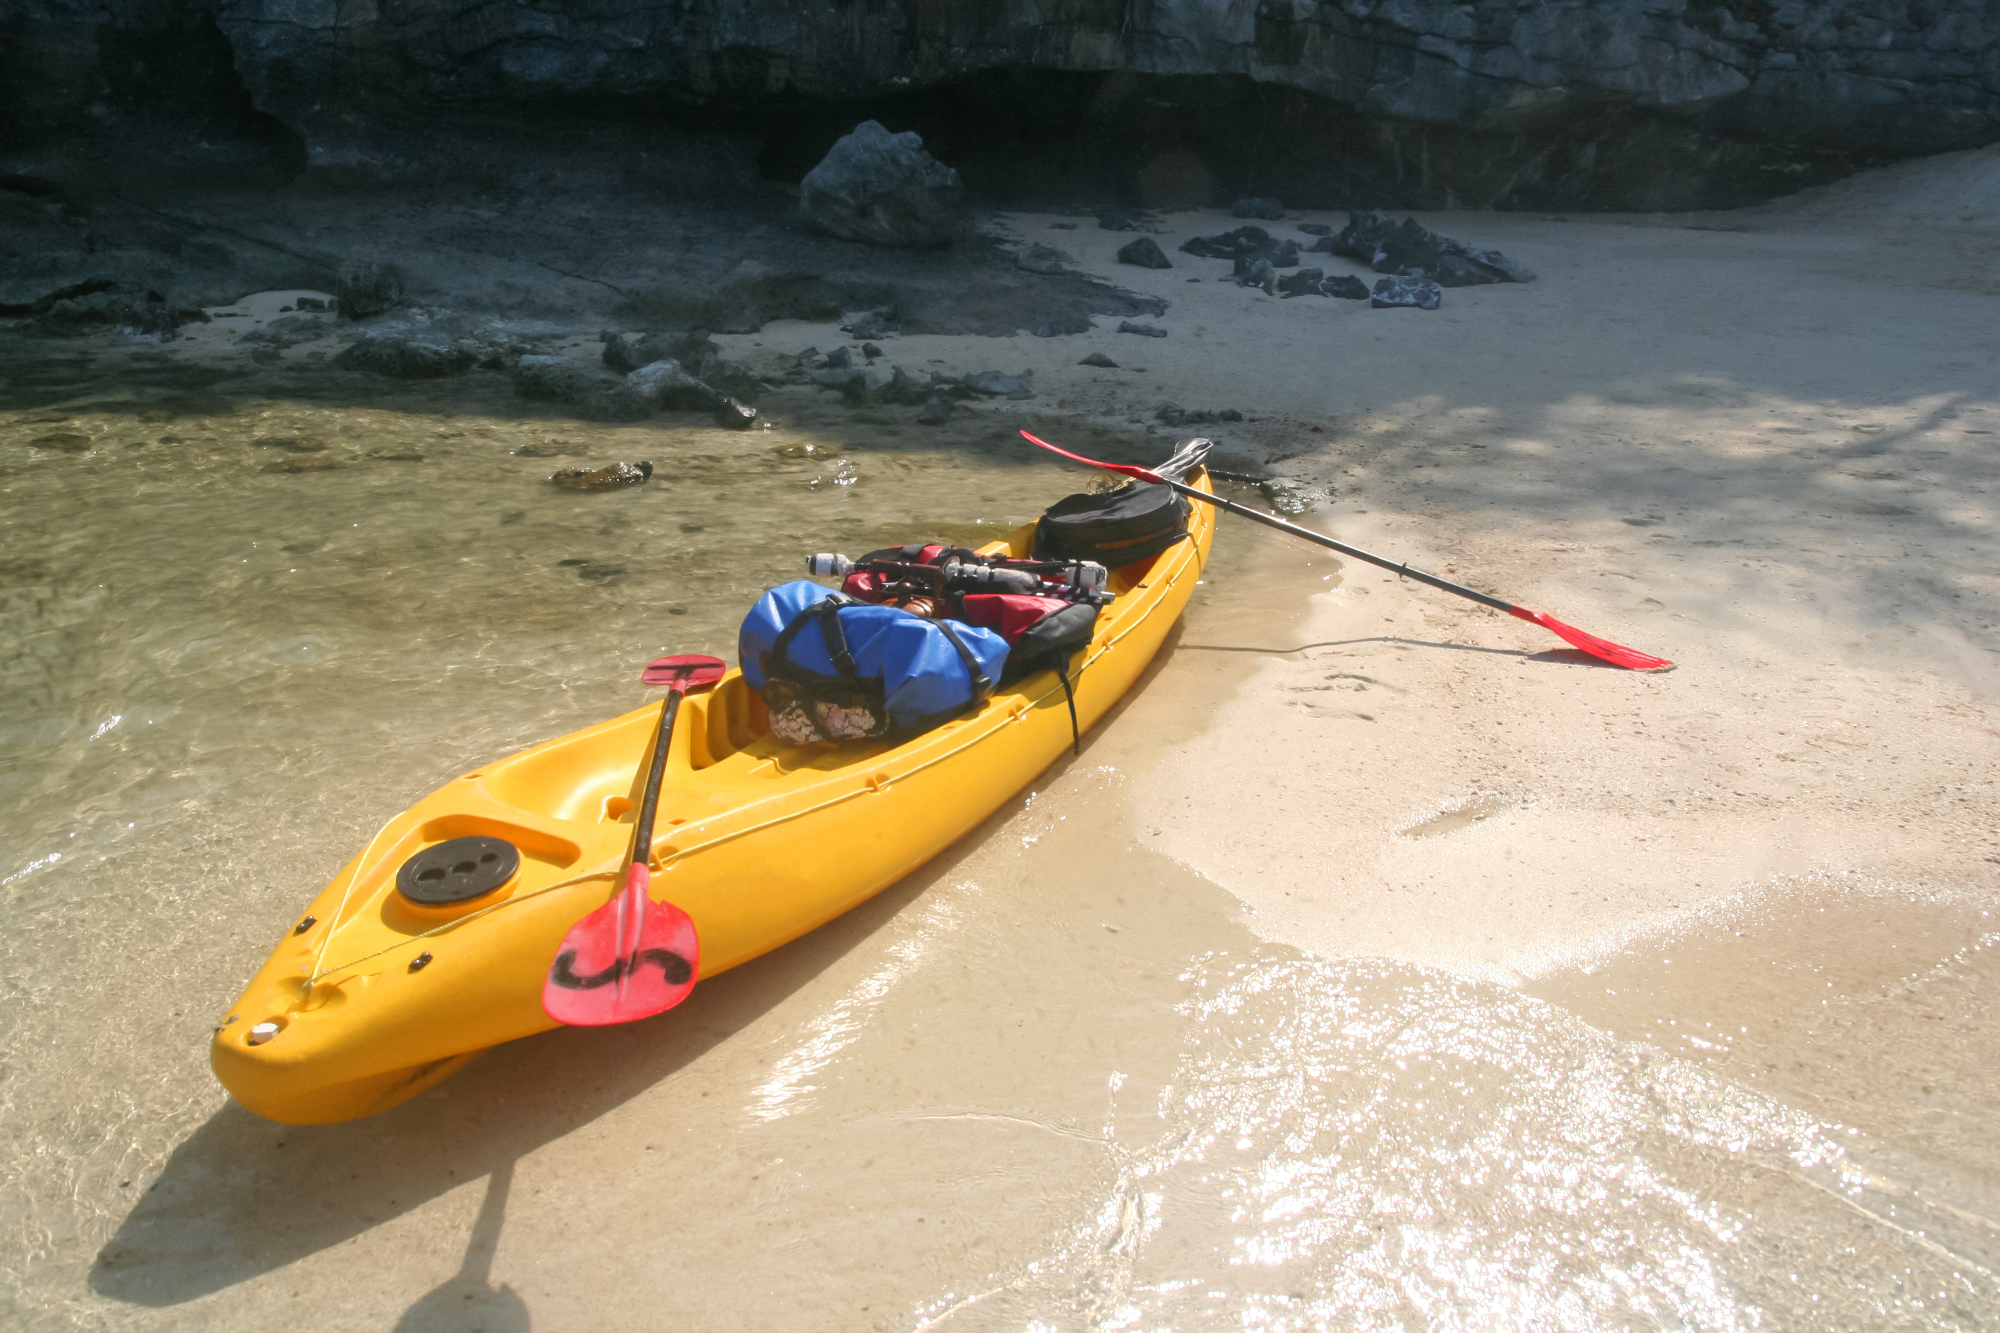 Scegli i migliori pantaloni kayak perche offrono comfort e libertà